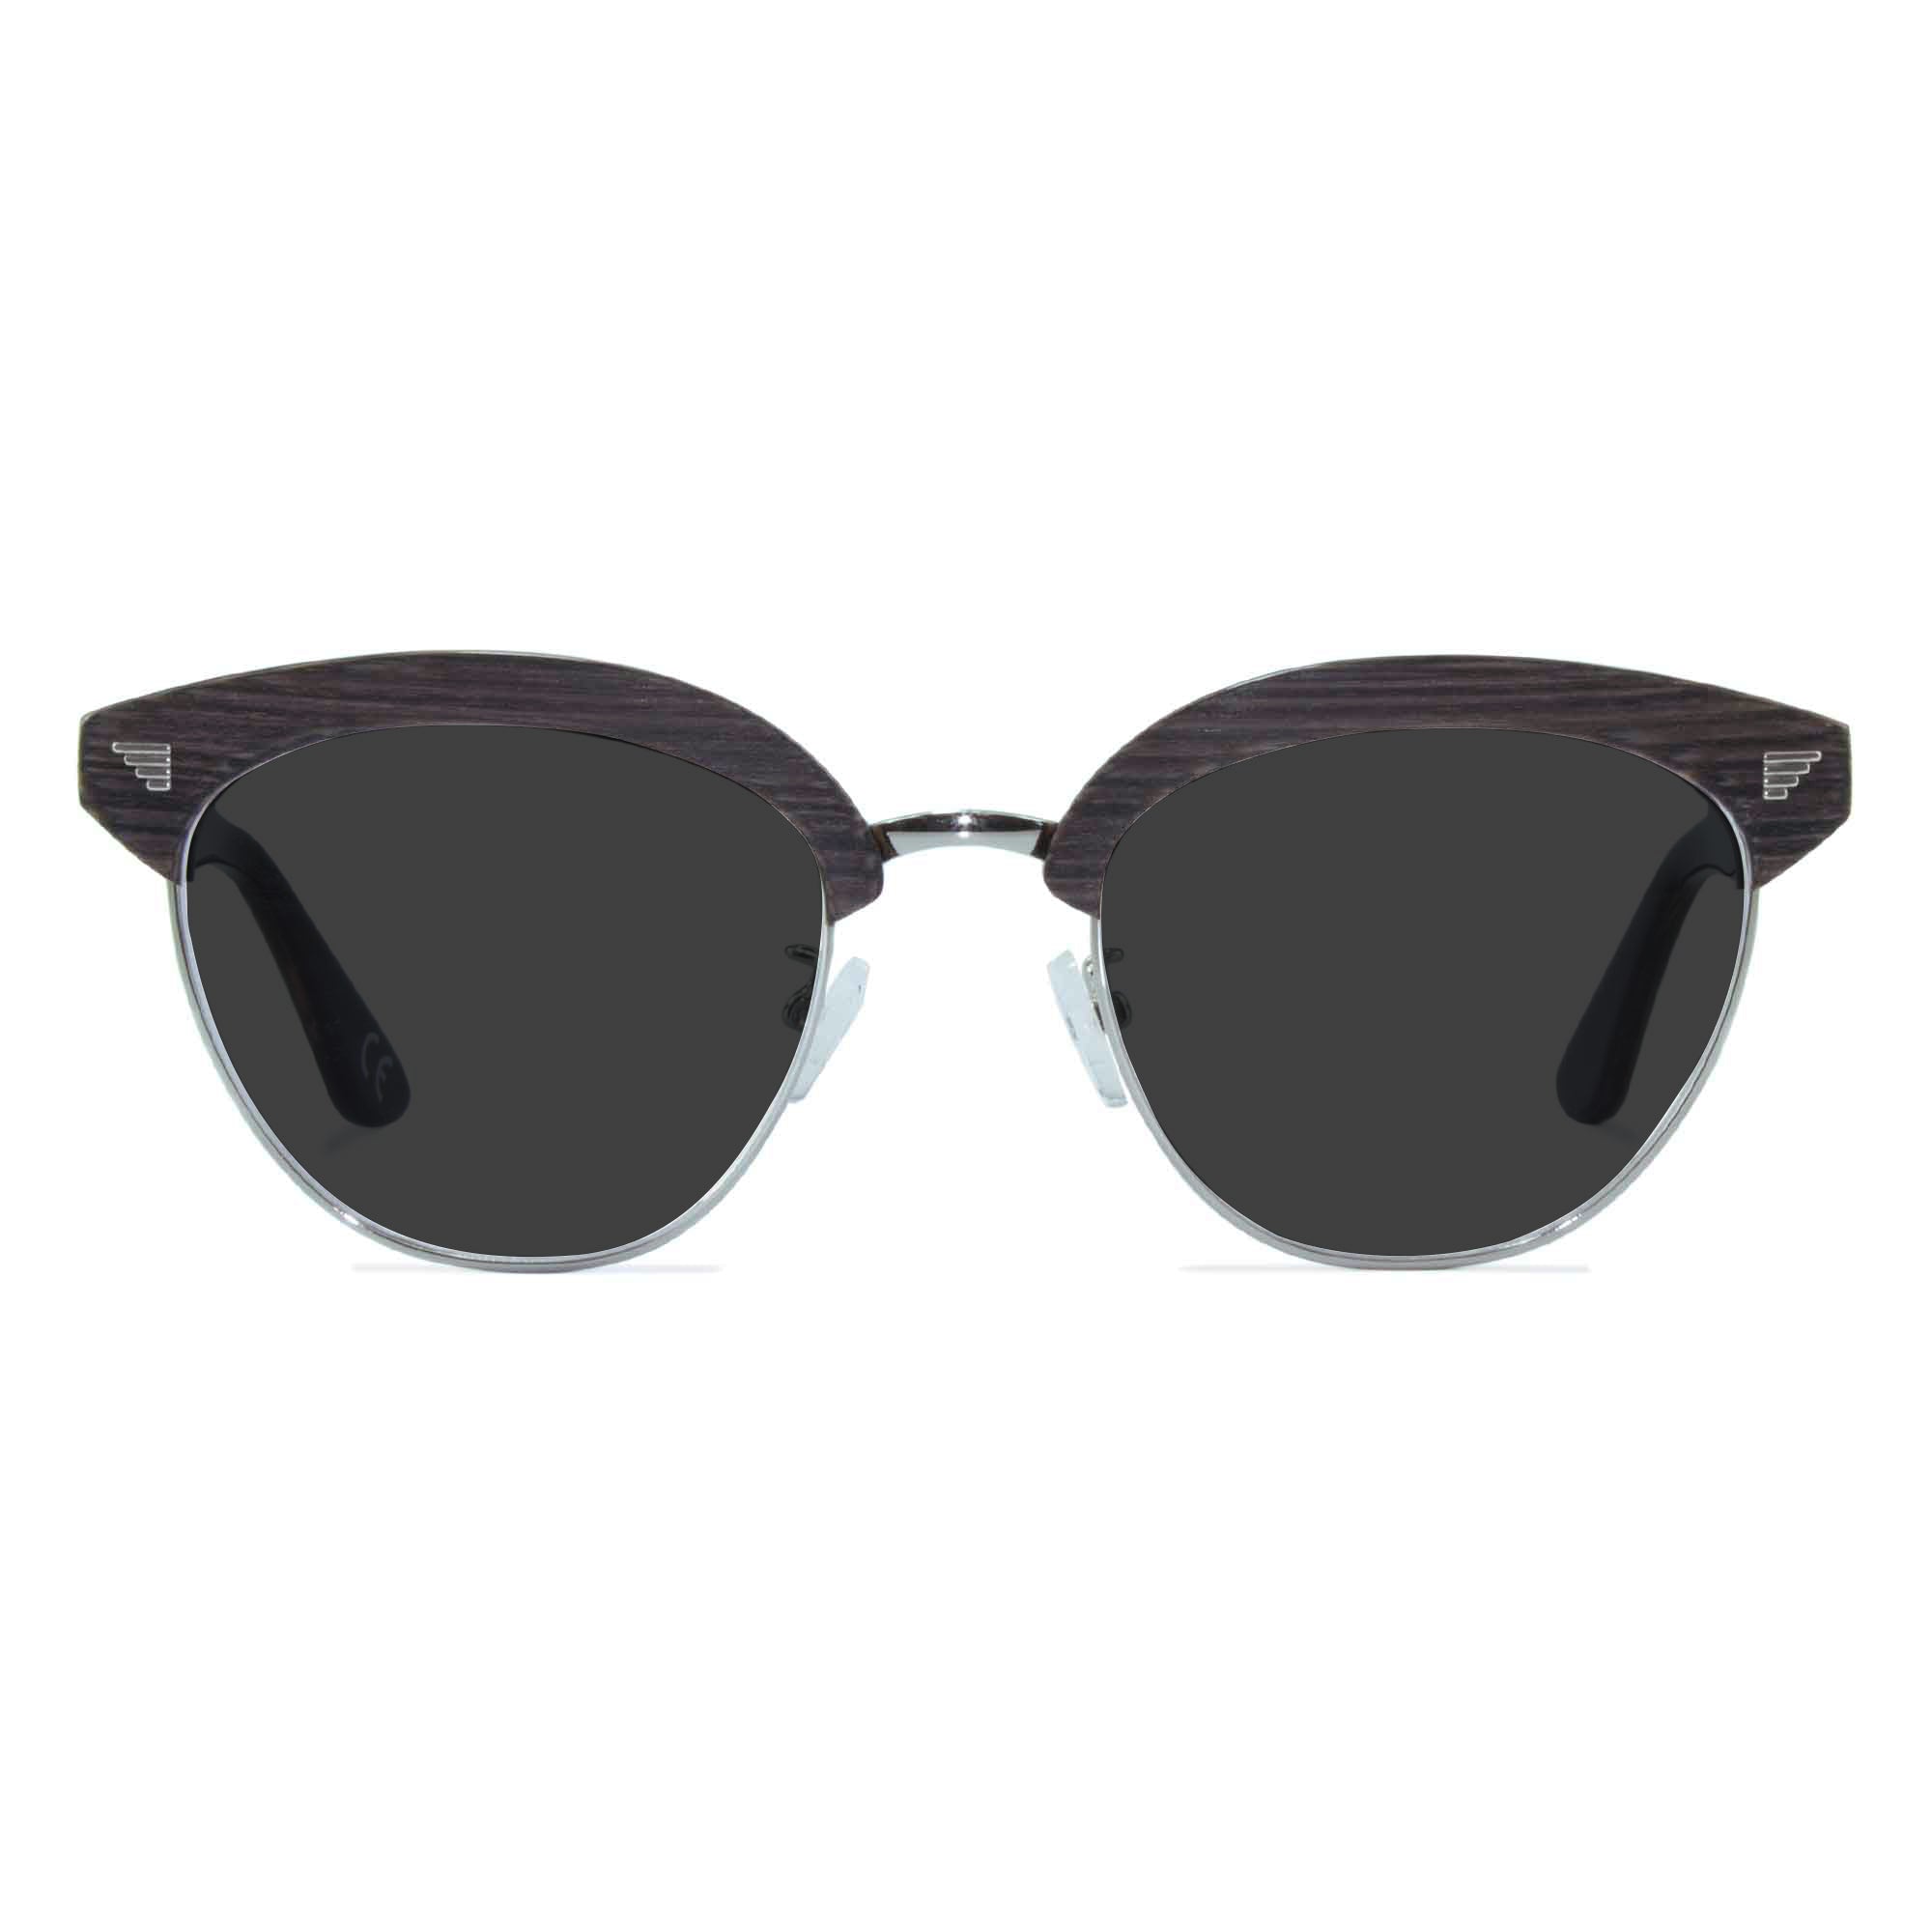 dark grey browline sunglasses